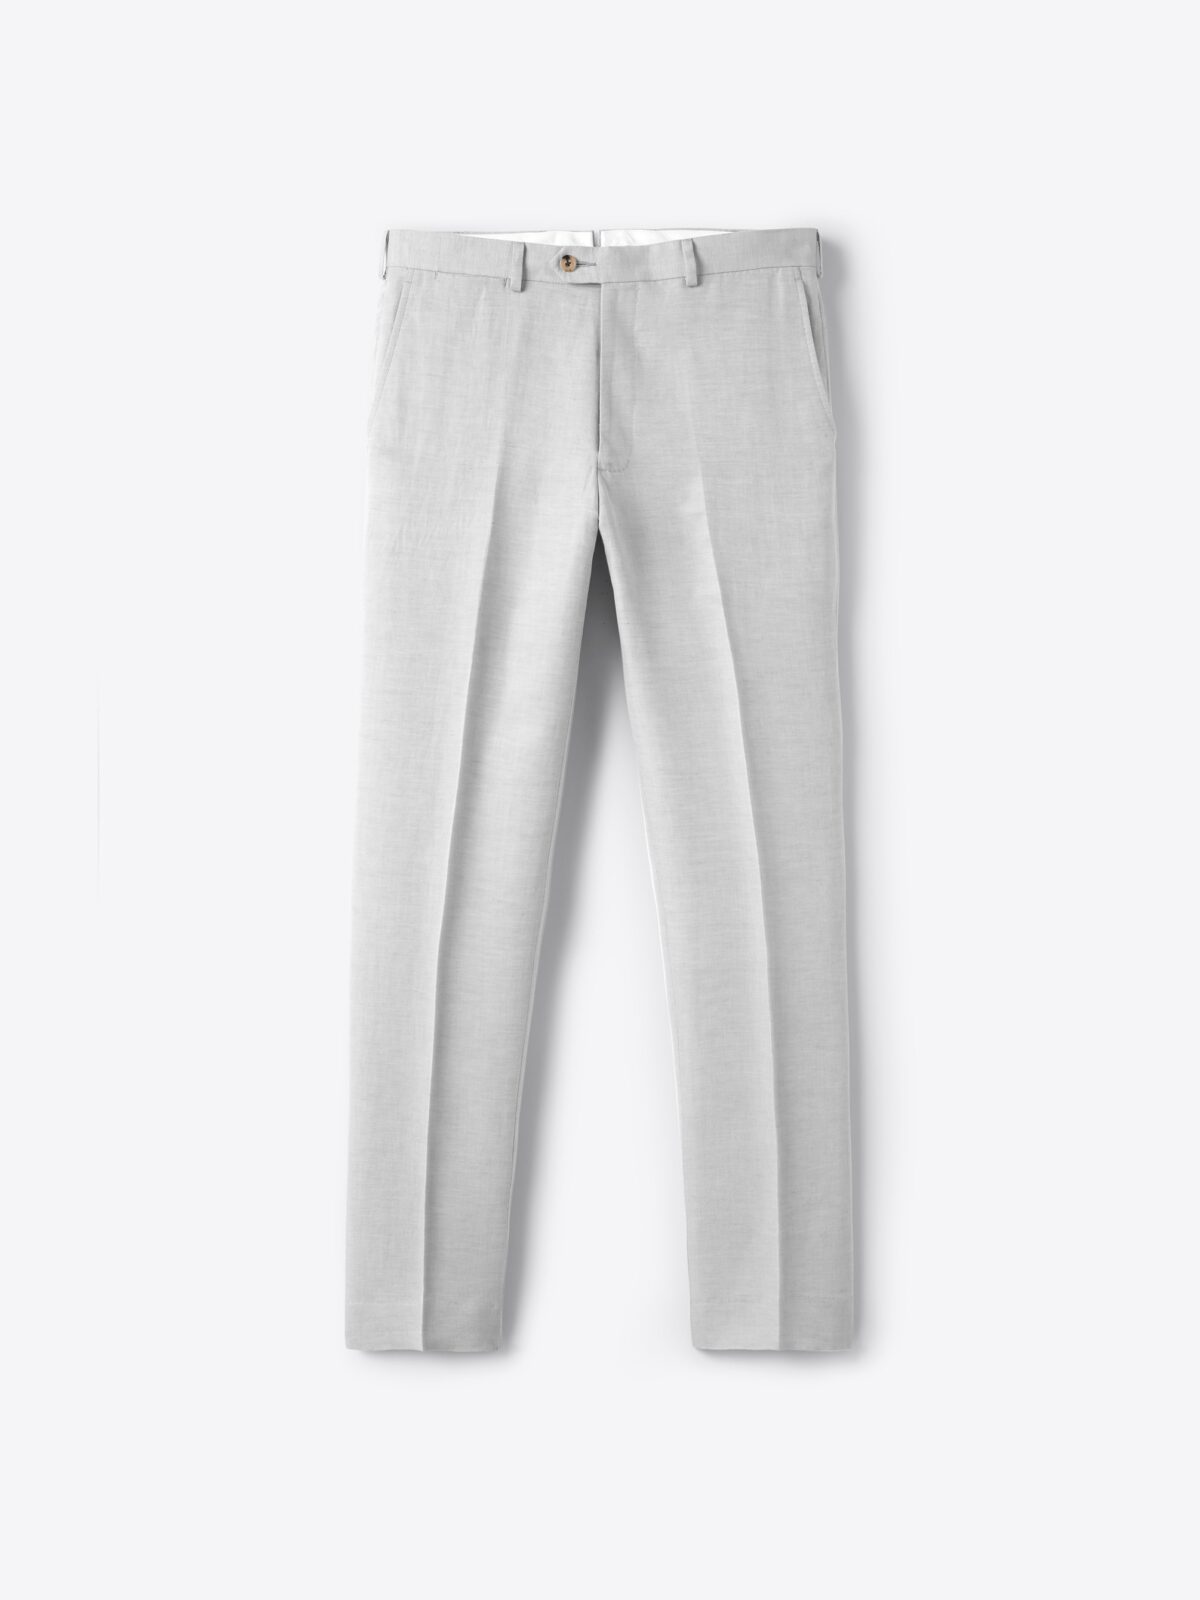 Iron grey linen high waisted pleated lightweight Women Dress Pants